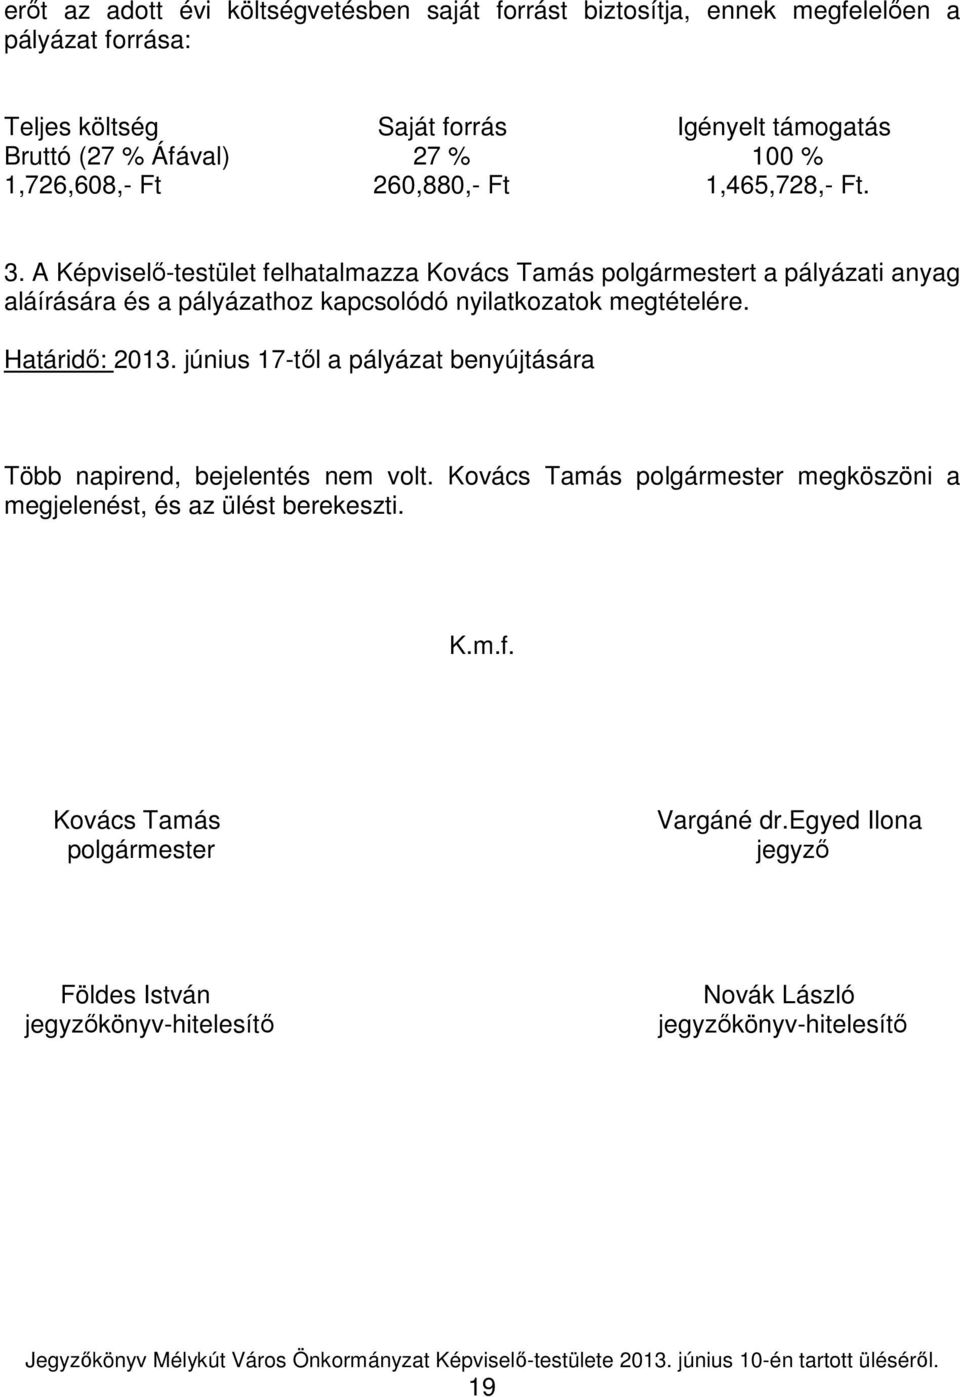 A Képviselı-testület felhatalmazza Kovács Tamás polgármestert a pályázati anyag aláírására és a pályázathoz kapcsolódó nyilatkozatok megtételére. Határidı: 2013.